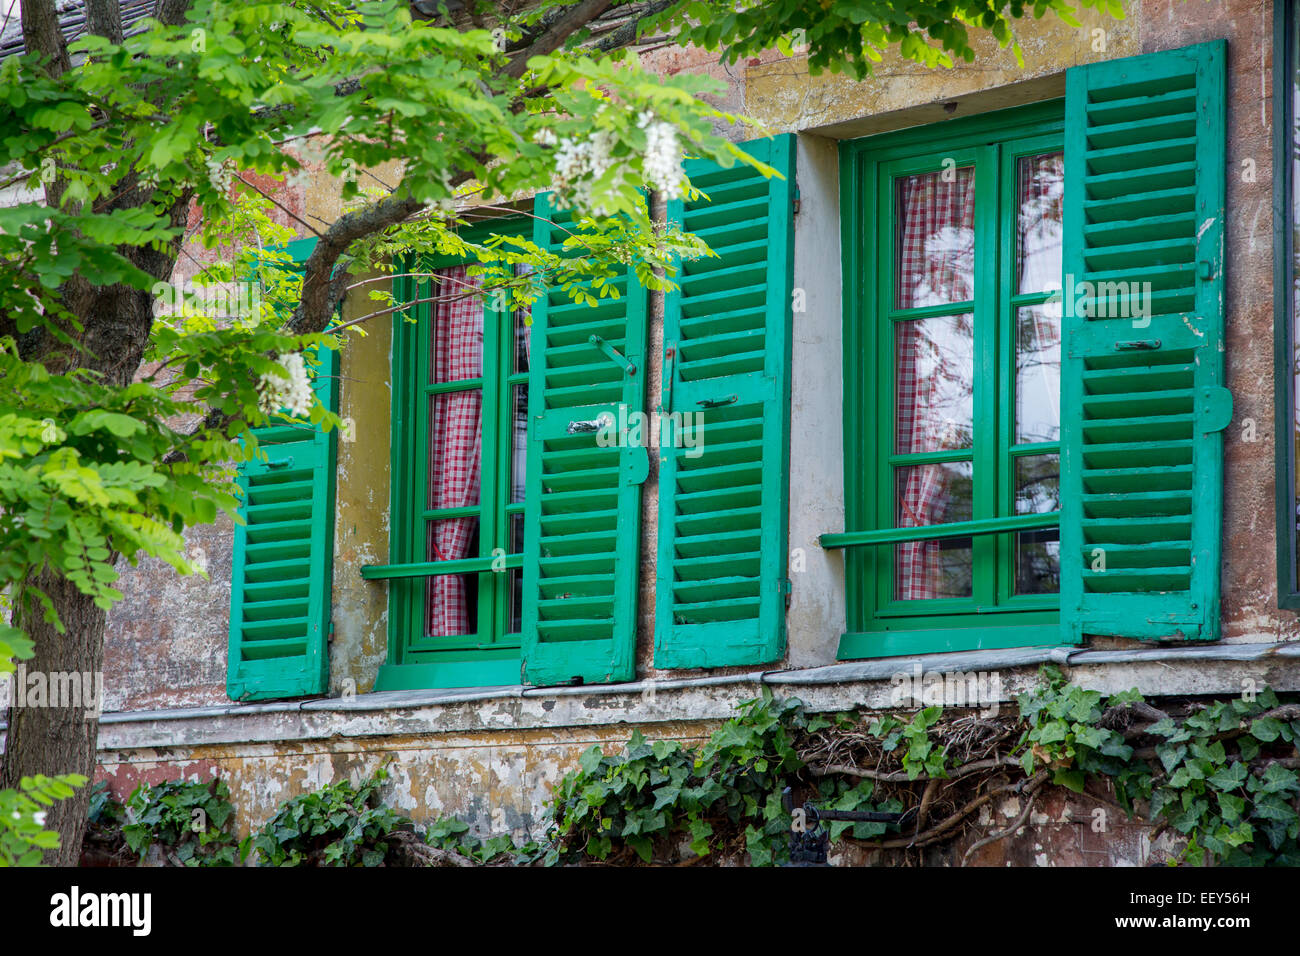 La fenêtre aux volets verts sur Lapin Agile - Cabaret historique à Montmartre, Paris, France Banque D'Images